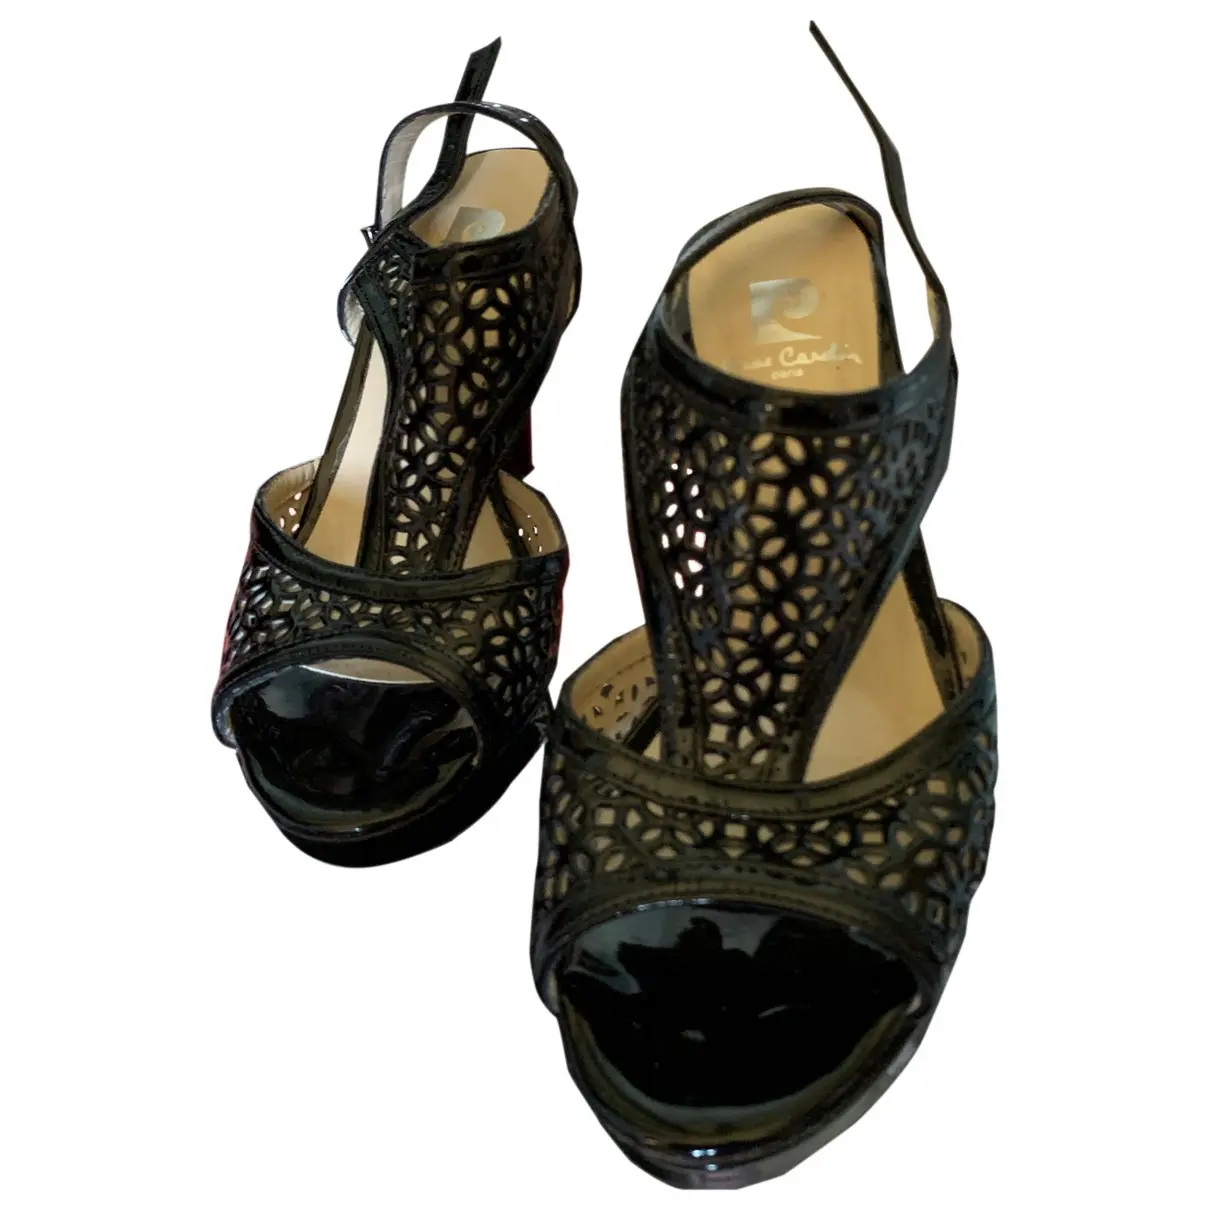 Patent leather sandals Pierre Cardin - Vintage